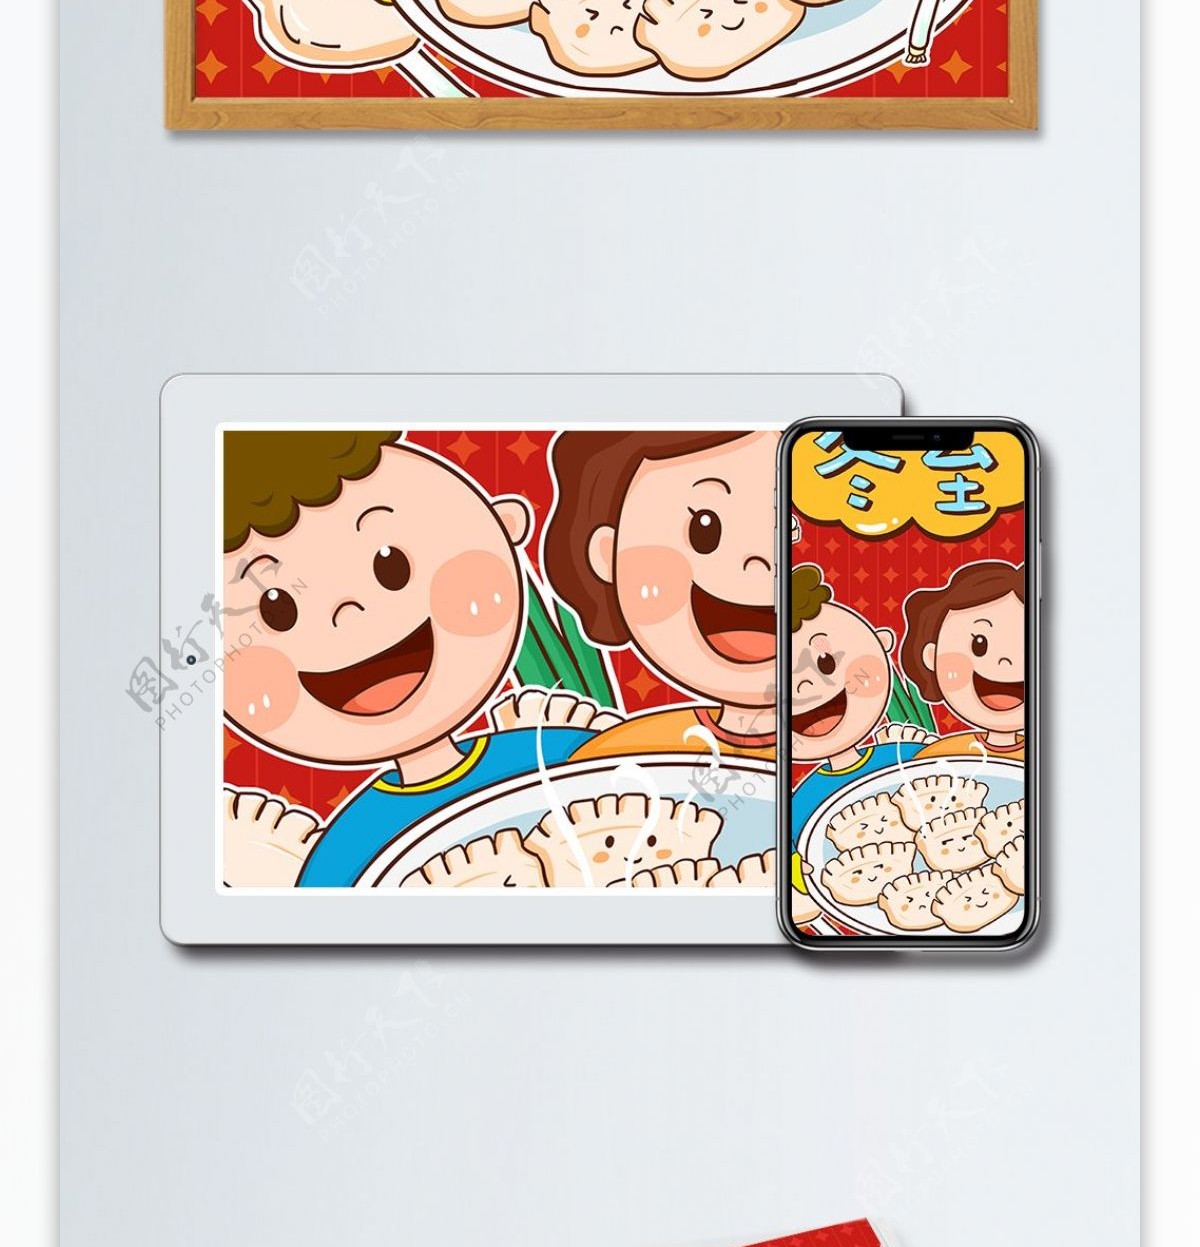 十二节气冬至家人开心吃饺子卡通插画